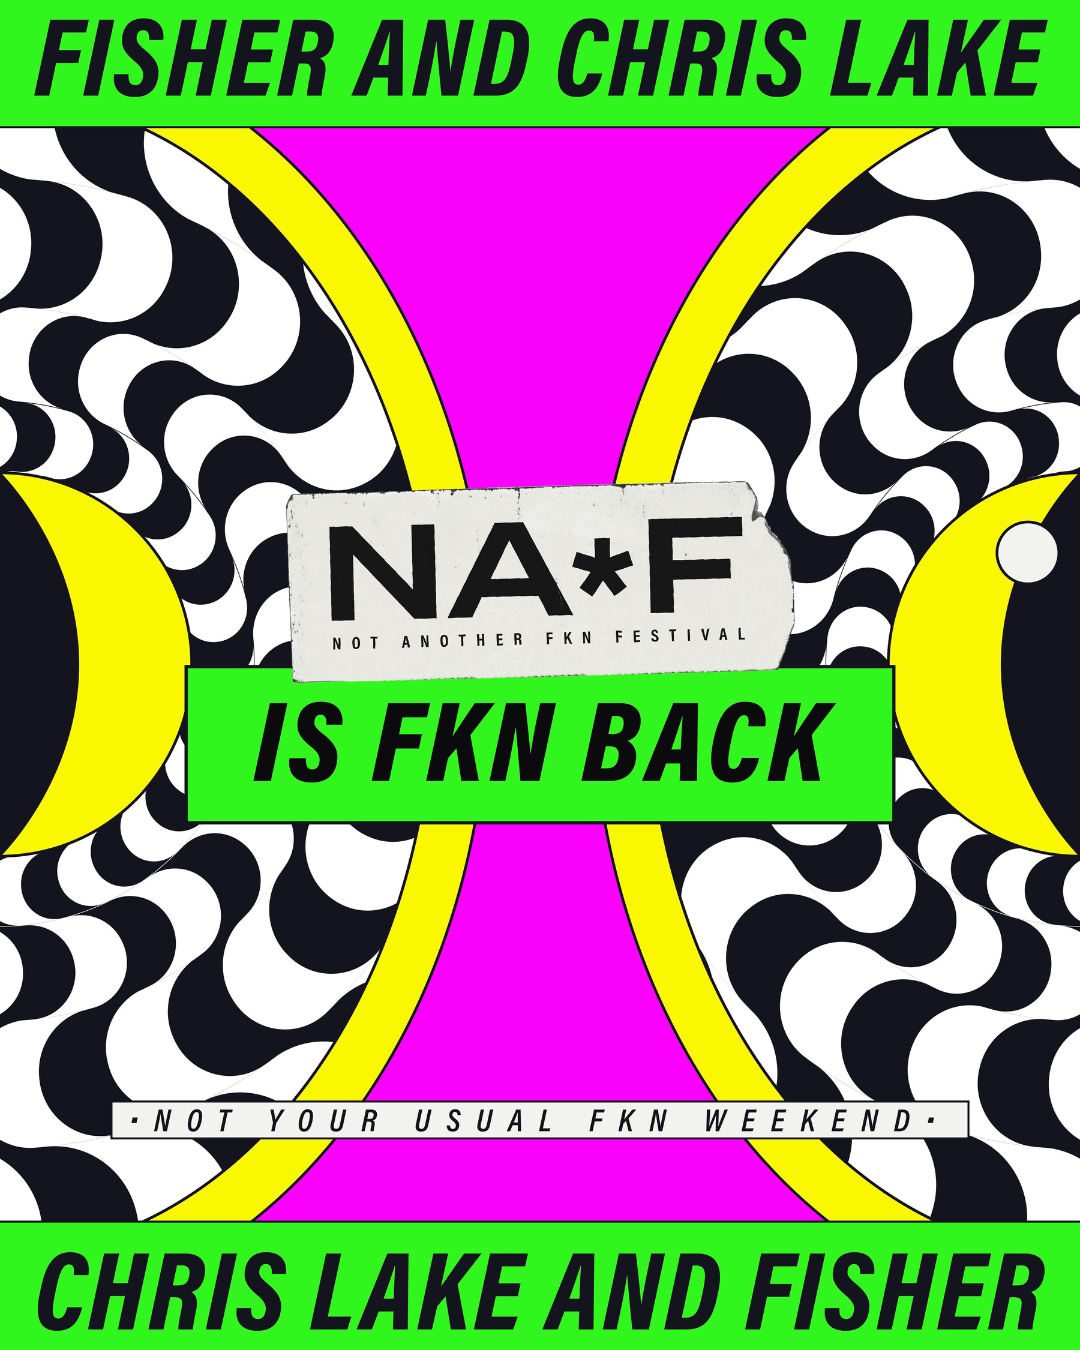 NAFF, festa autoral de Fisher e Chris Lake, está de volta ao Brasil